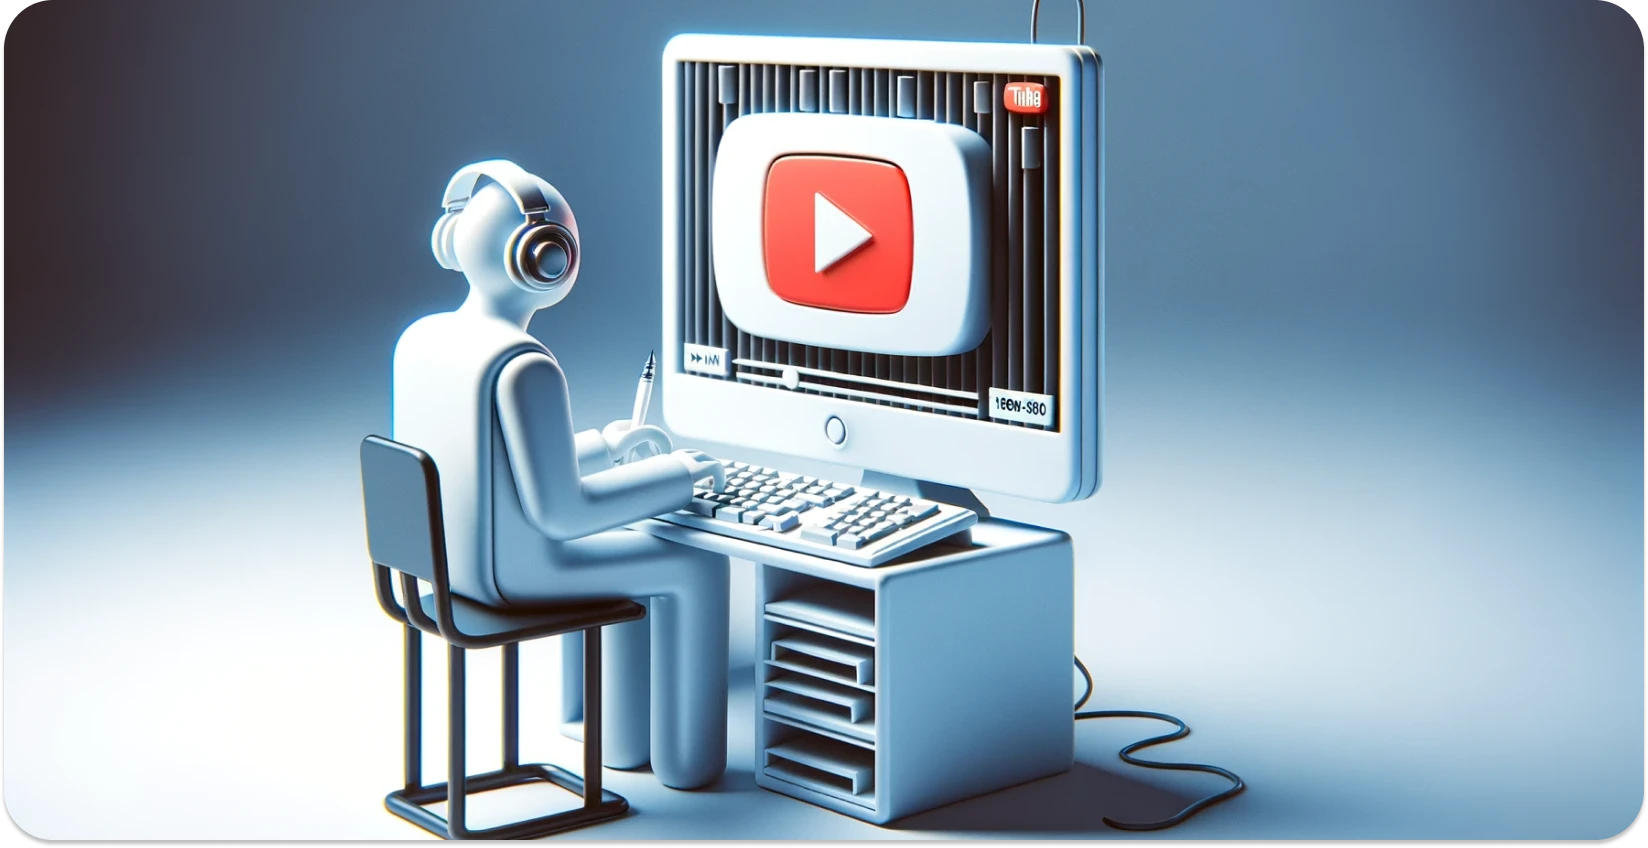 Ilustração estilizada de uma pessoa usando um computador com a interface YouTube, com foco na transcrição.